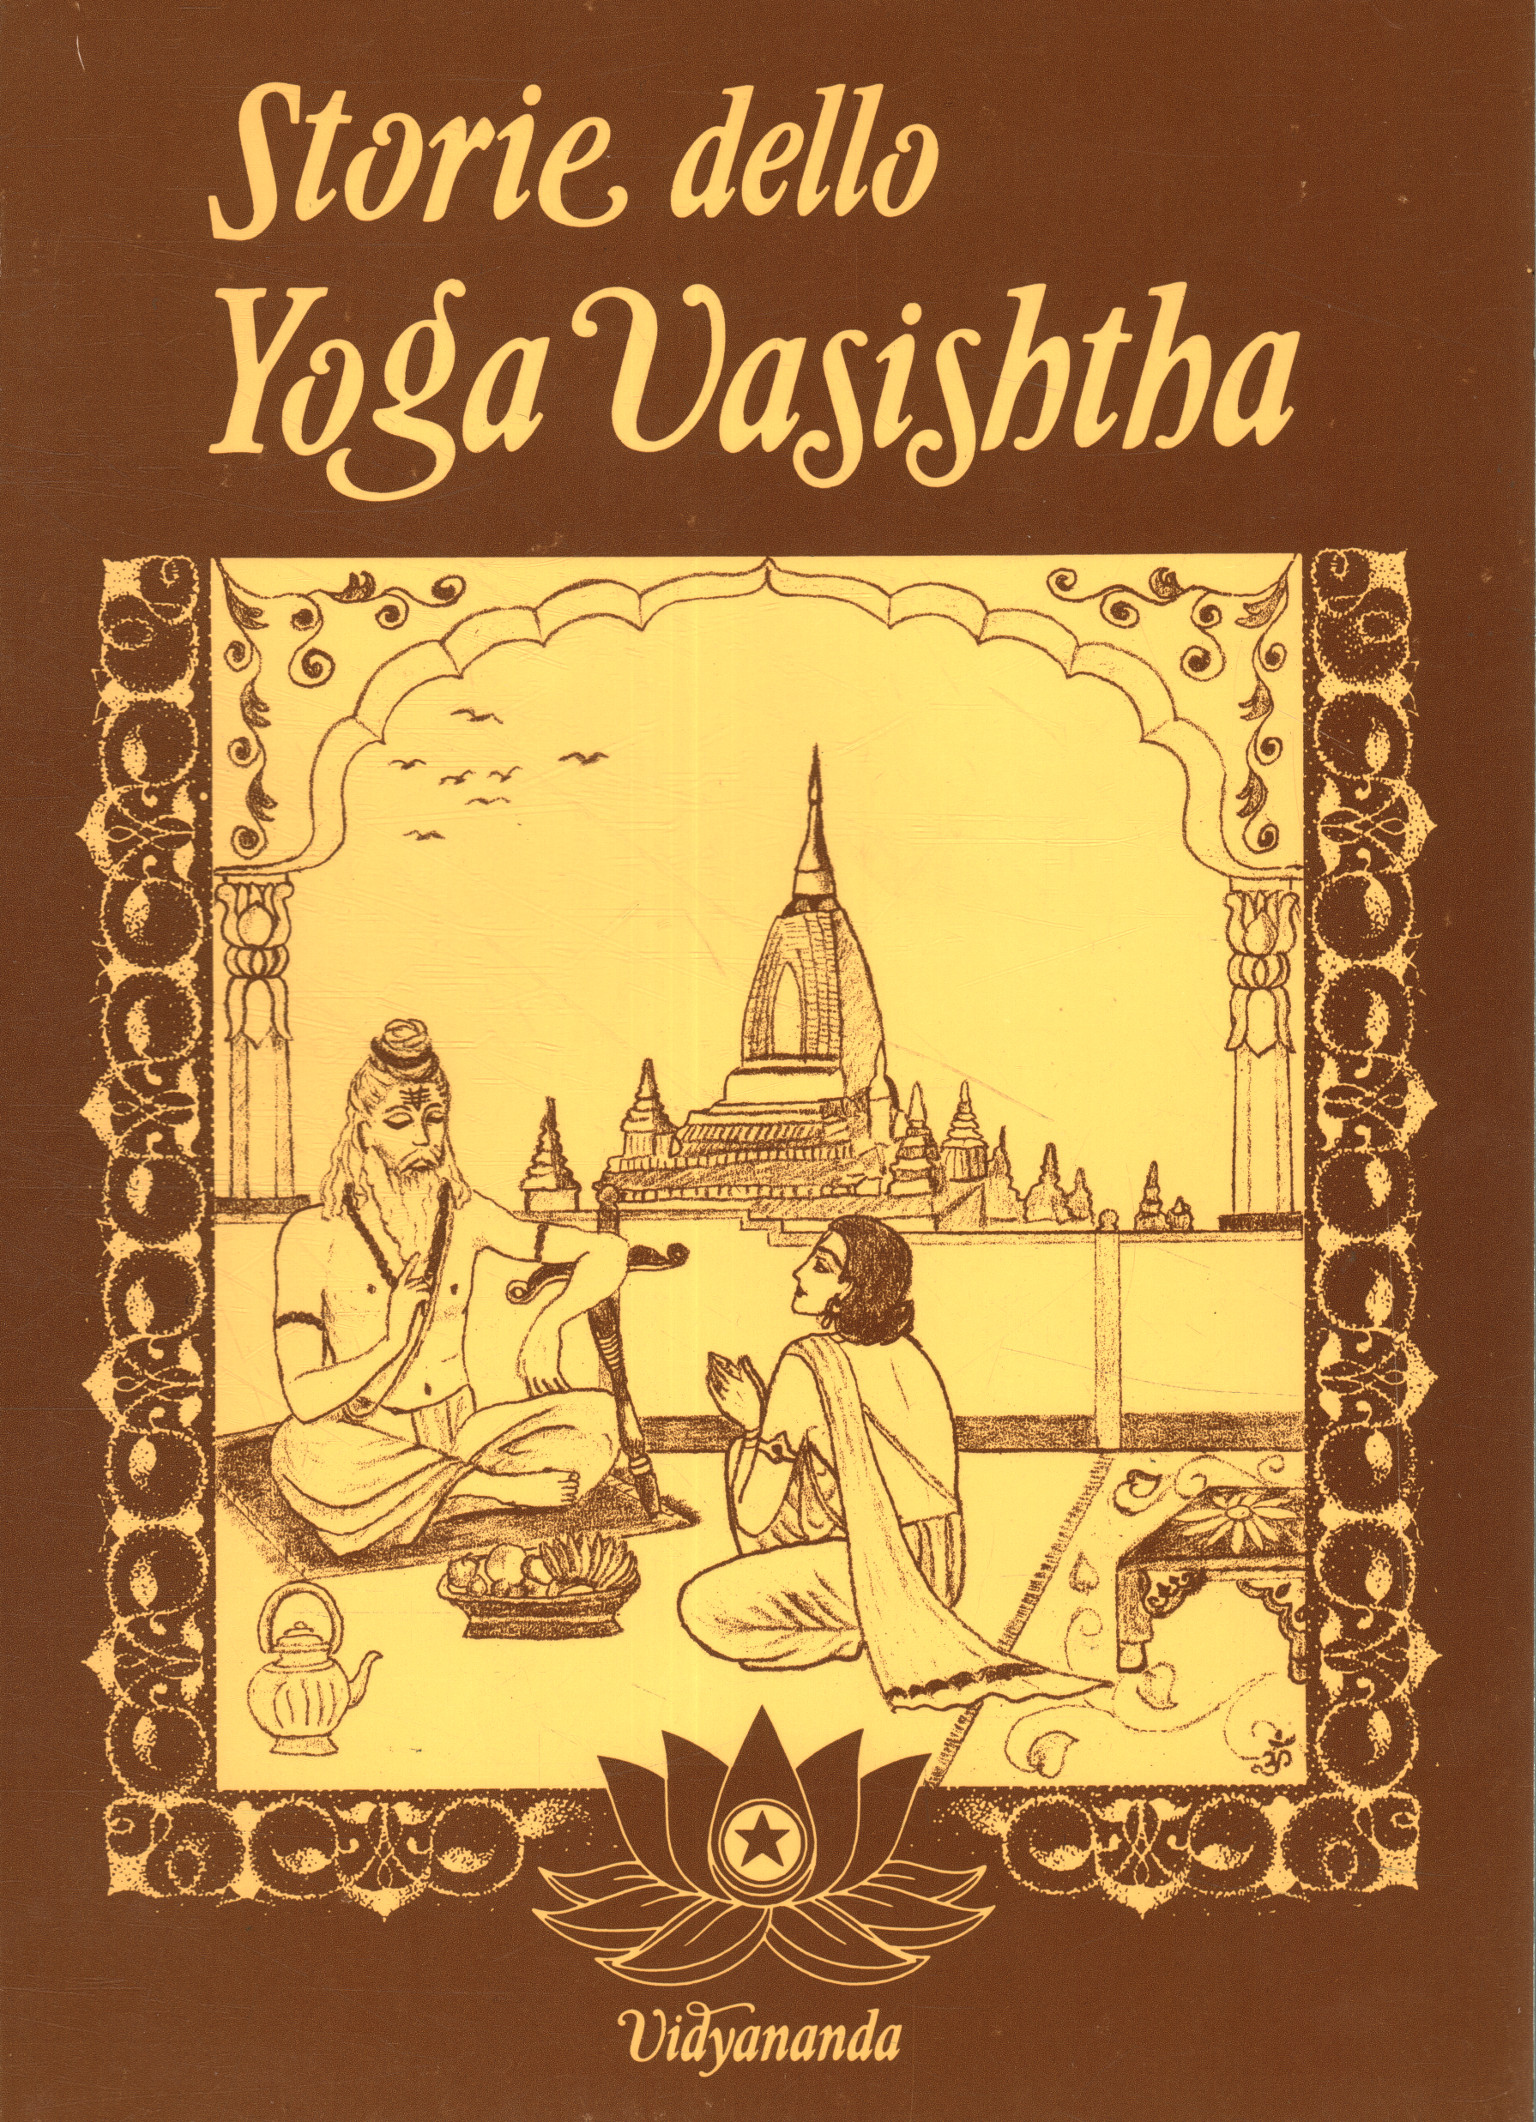 Storie dello Yoga Vasishtha